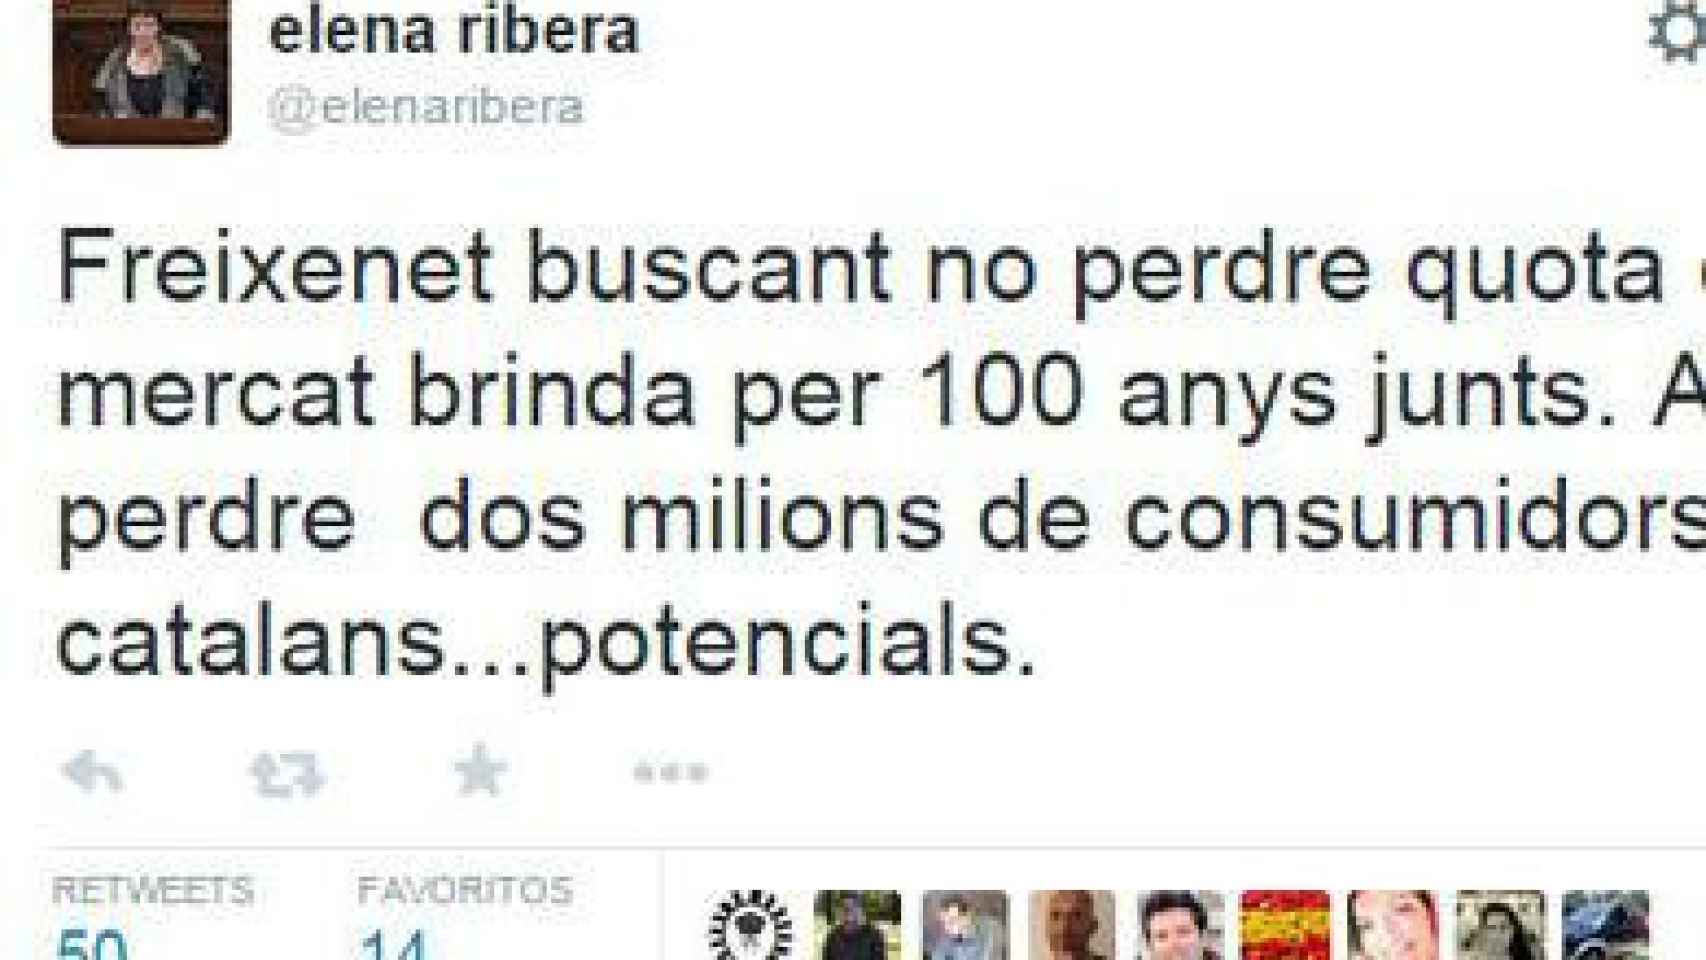 Tuit de la diputada autonómica de CiU Elena Ribera llamando al boicot contra Freixenet por brindar